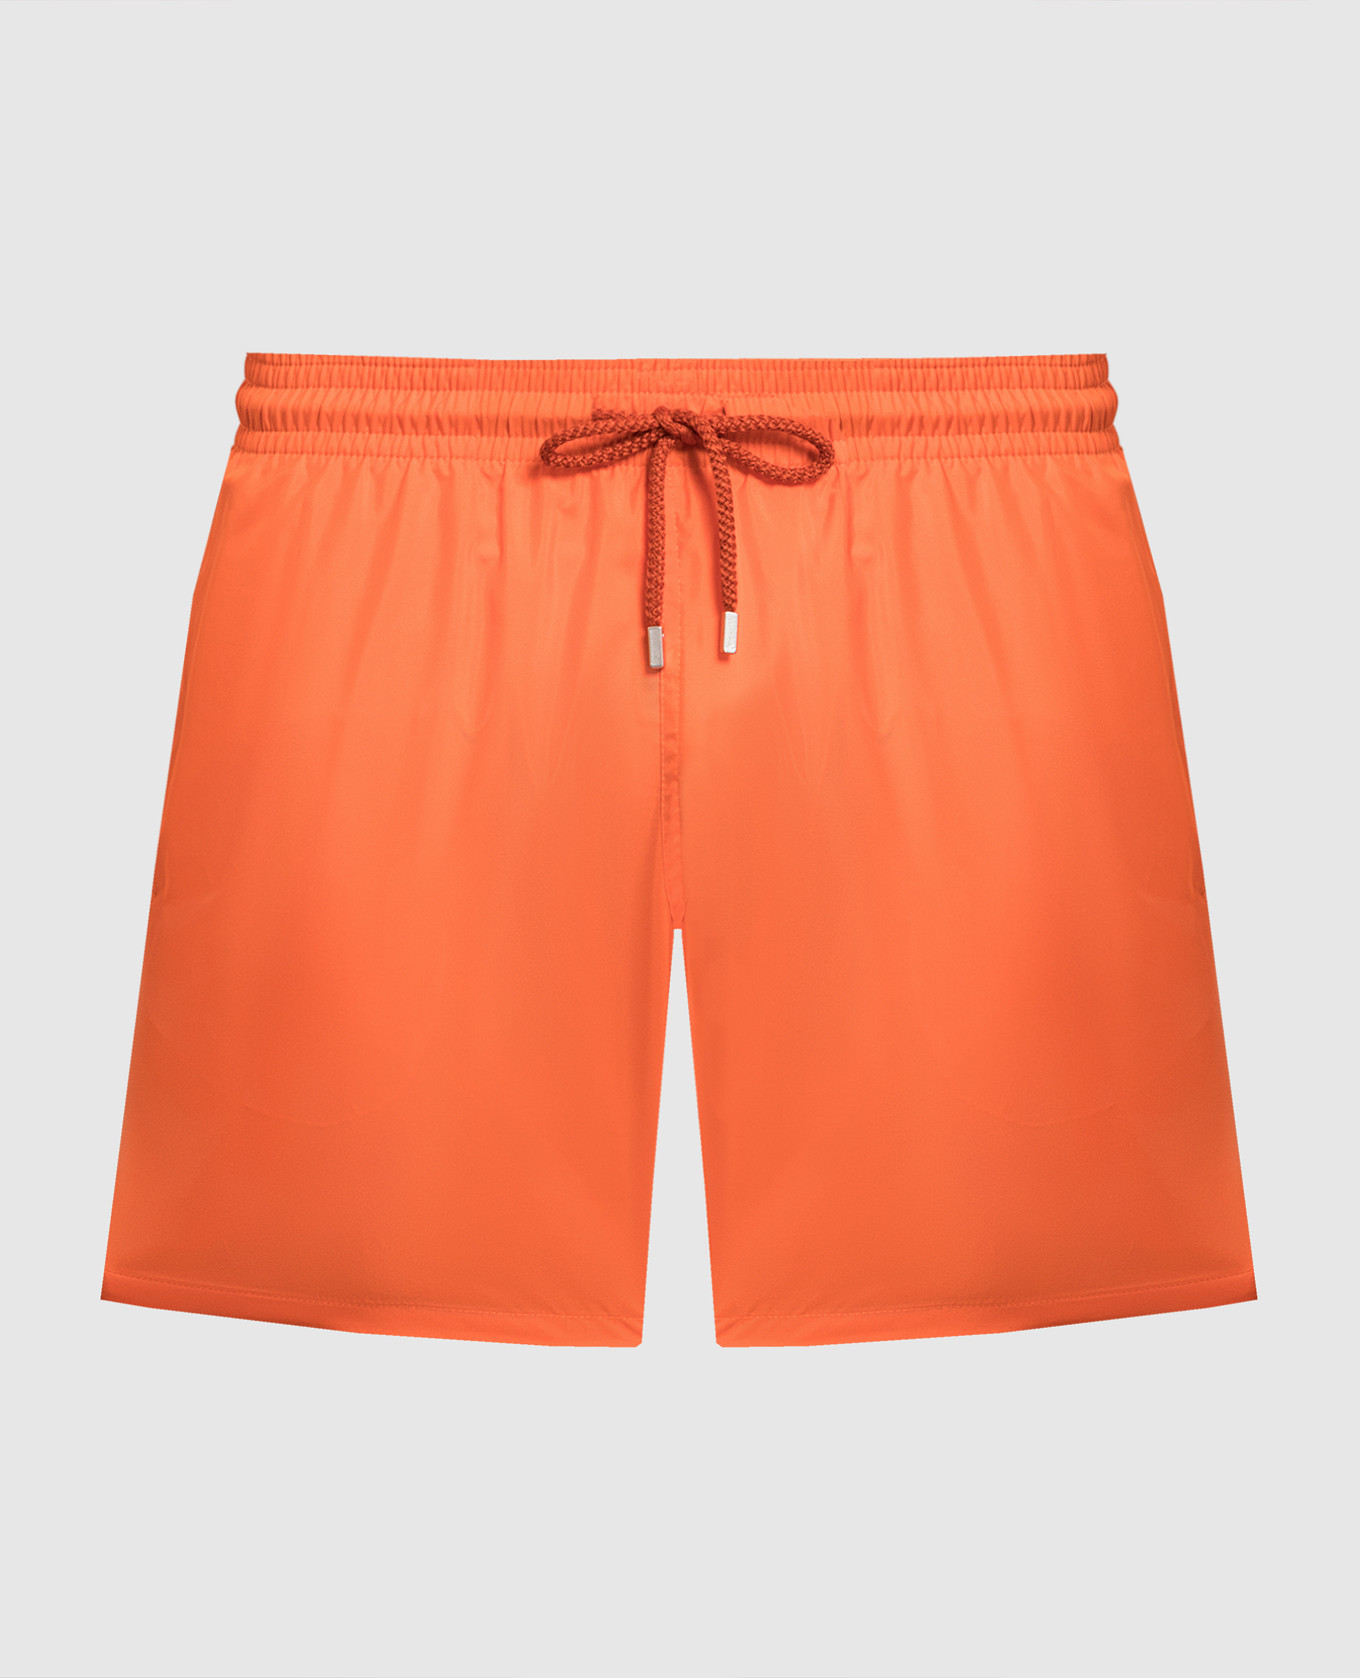 Mahina Orange Swim Shorts